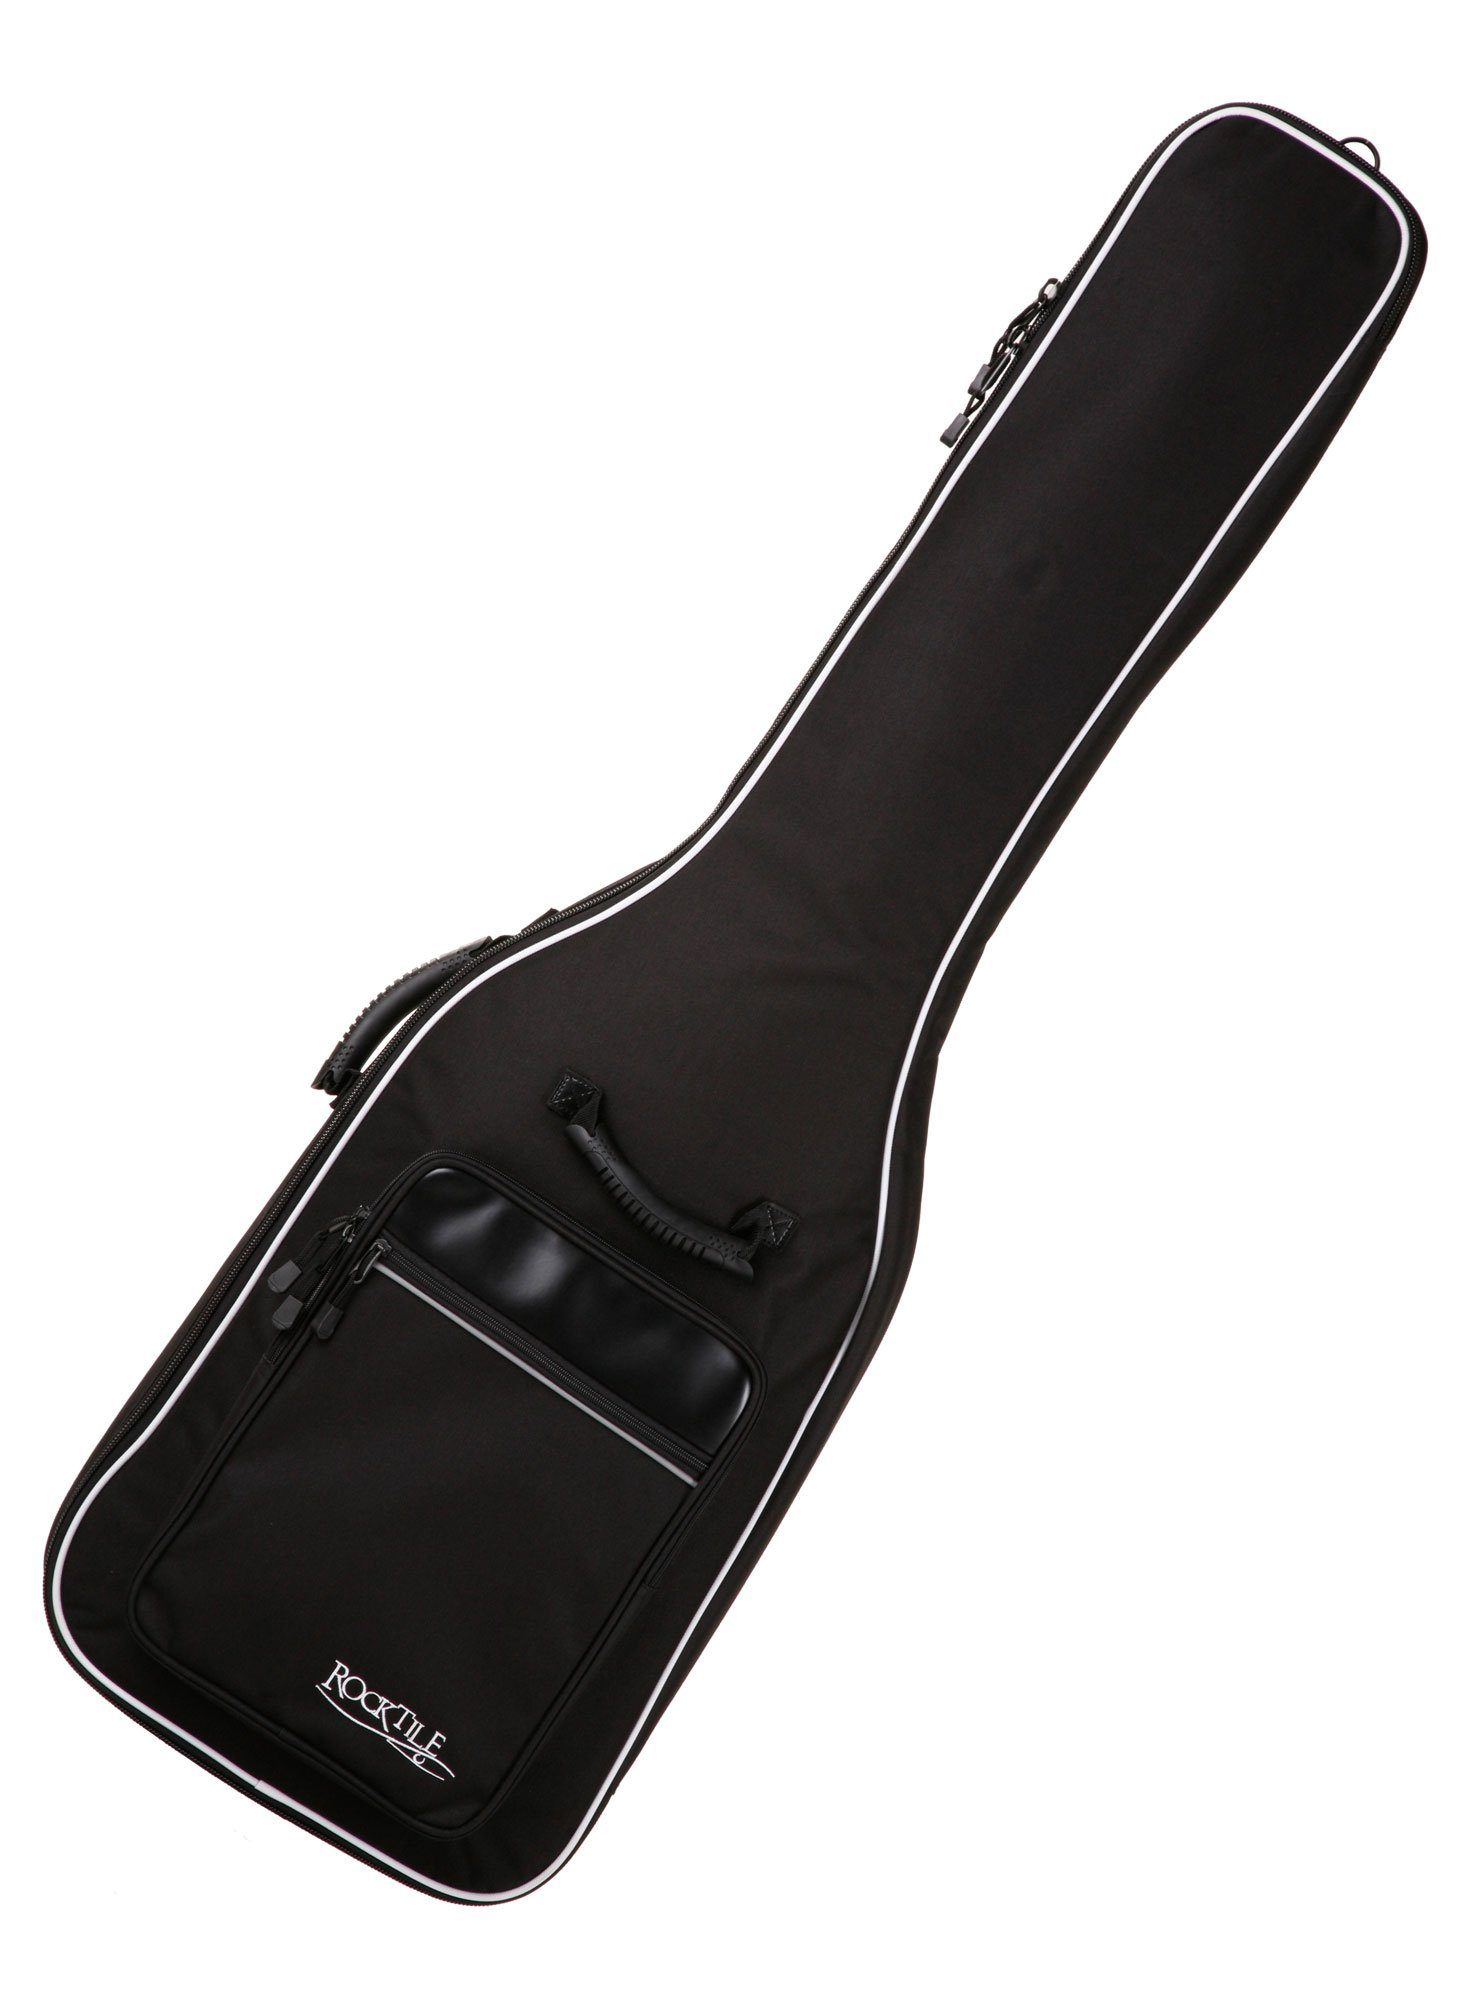 Rocktile Gitarrentasche 4/4 E-Basstasche - gepolstert mit Rucksackgarnitur Gigbag für E-Bass, Weiche Polsterung mit Fixierung für den Instrumentenhals